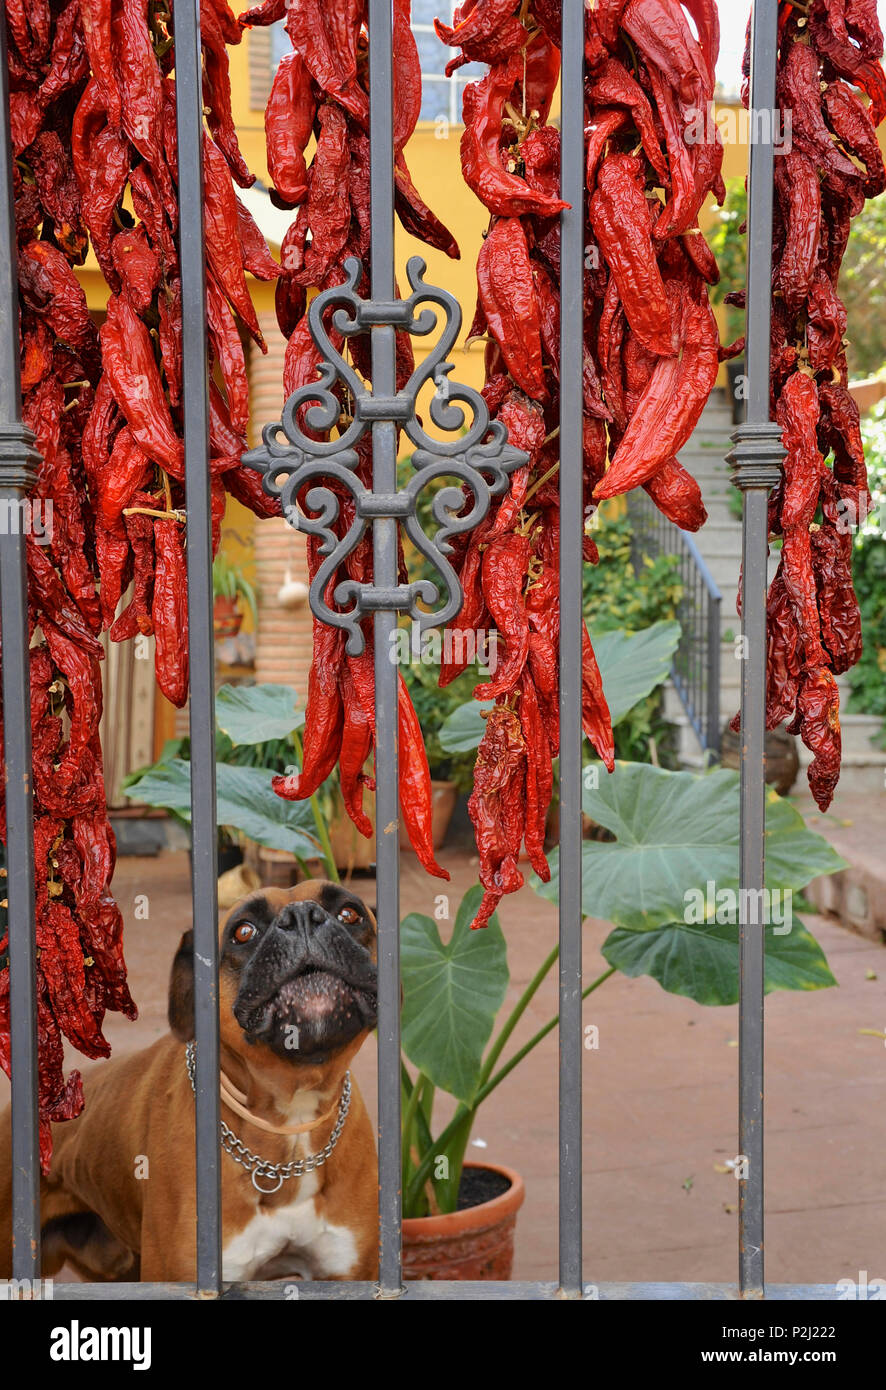 Chien derrière clôture lorsque a souligné le poivron rouge est le séchage, Monachil, près de Grenade, au pied de la Sierra Nevada, Andalousie, Sp Banque D'Images